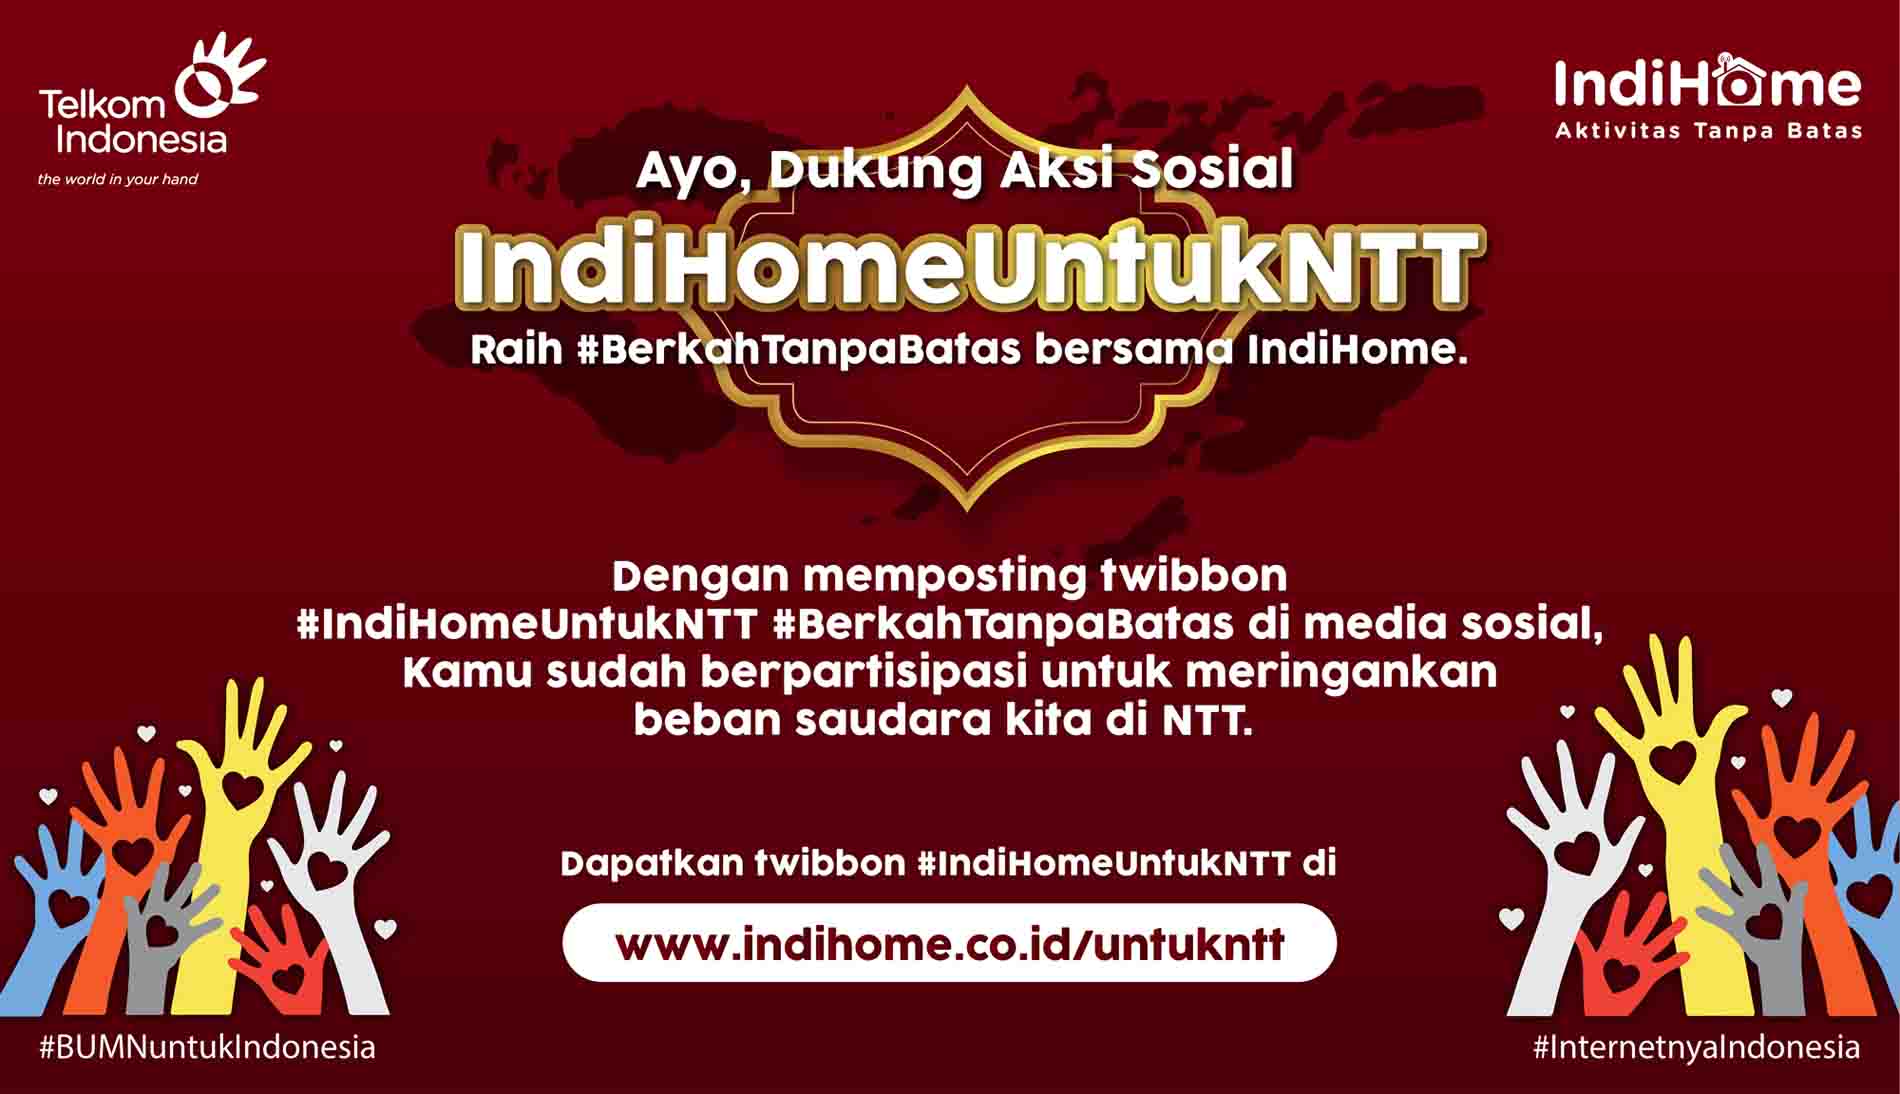 Dukung NTT Bangkit, Telkom Wujudkan Aksi Peduli IndiHome untuk NTT